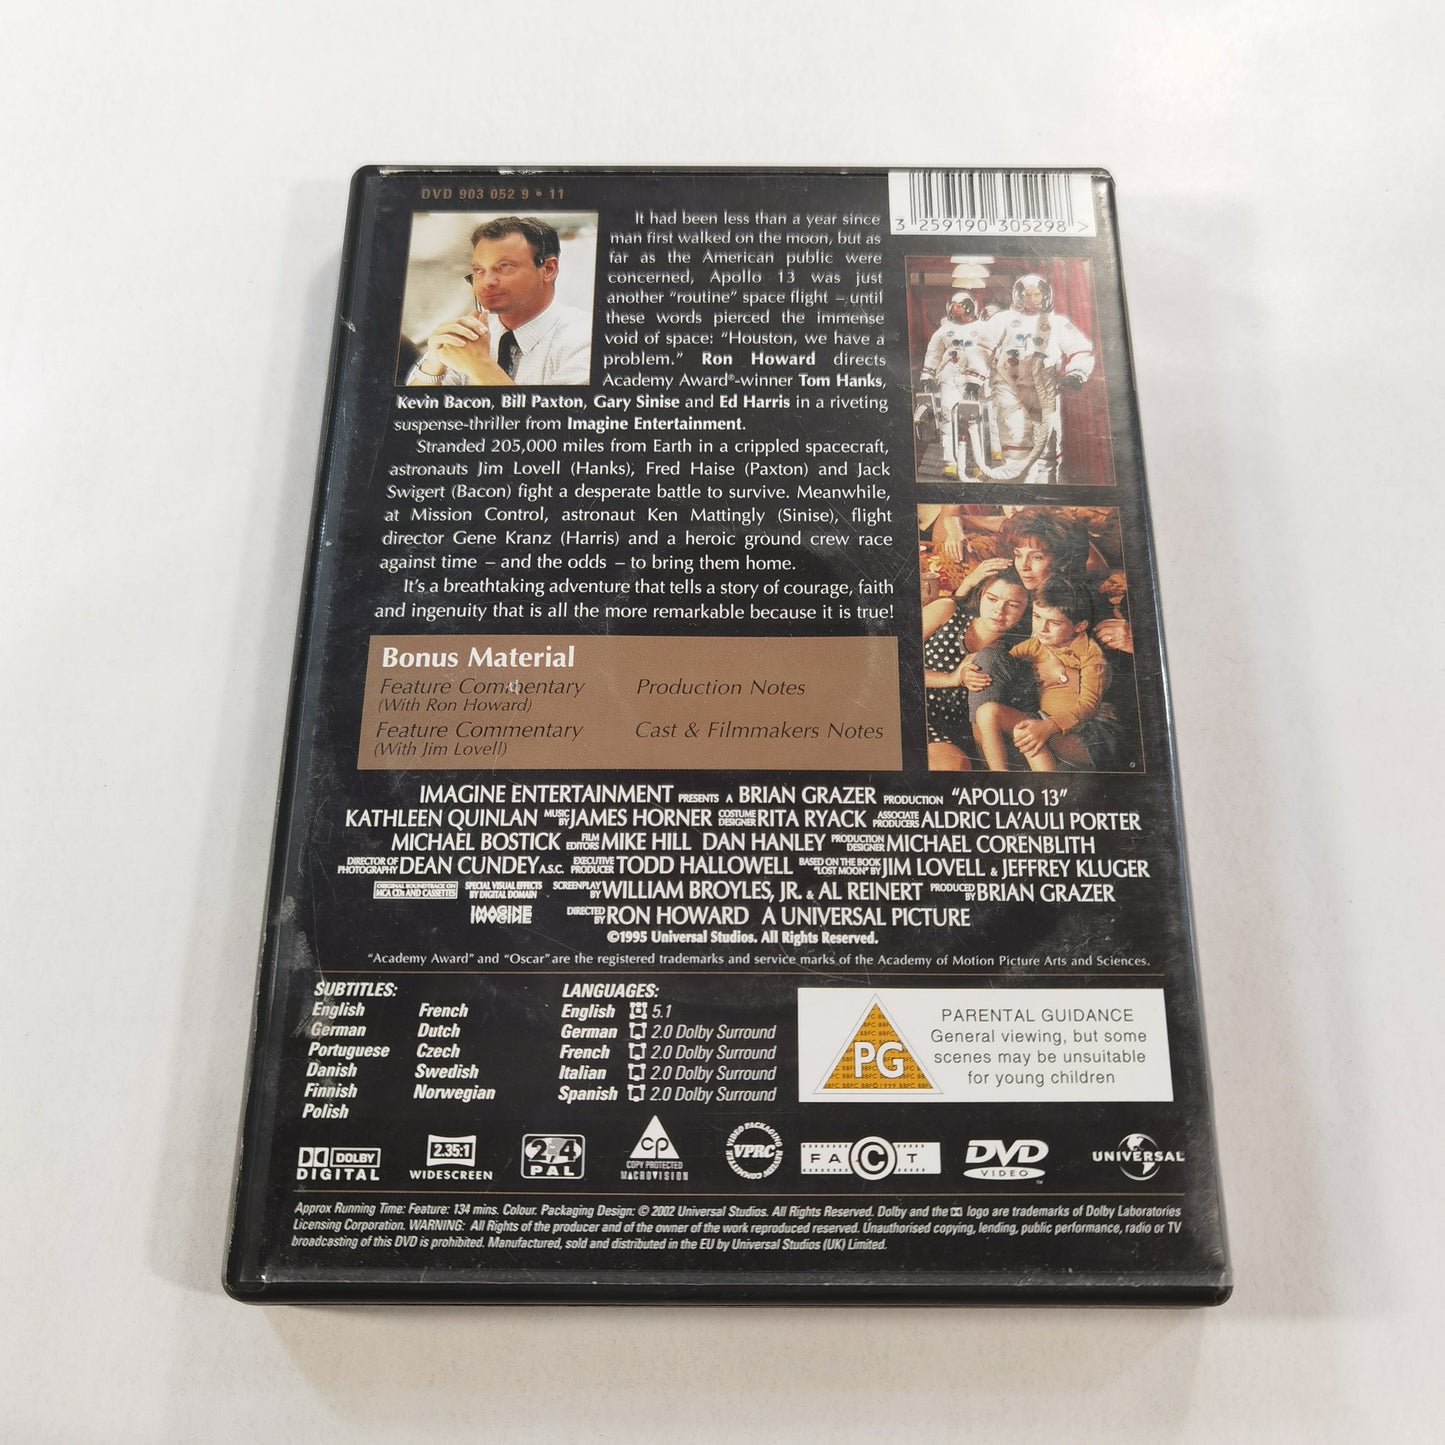 Apollo 13 (1995) - DVD UK 2002